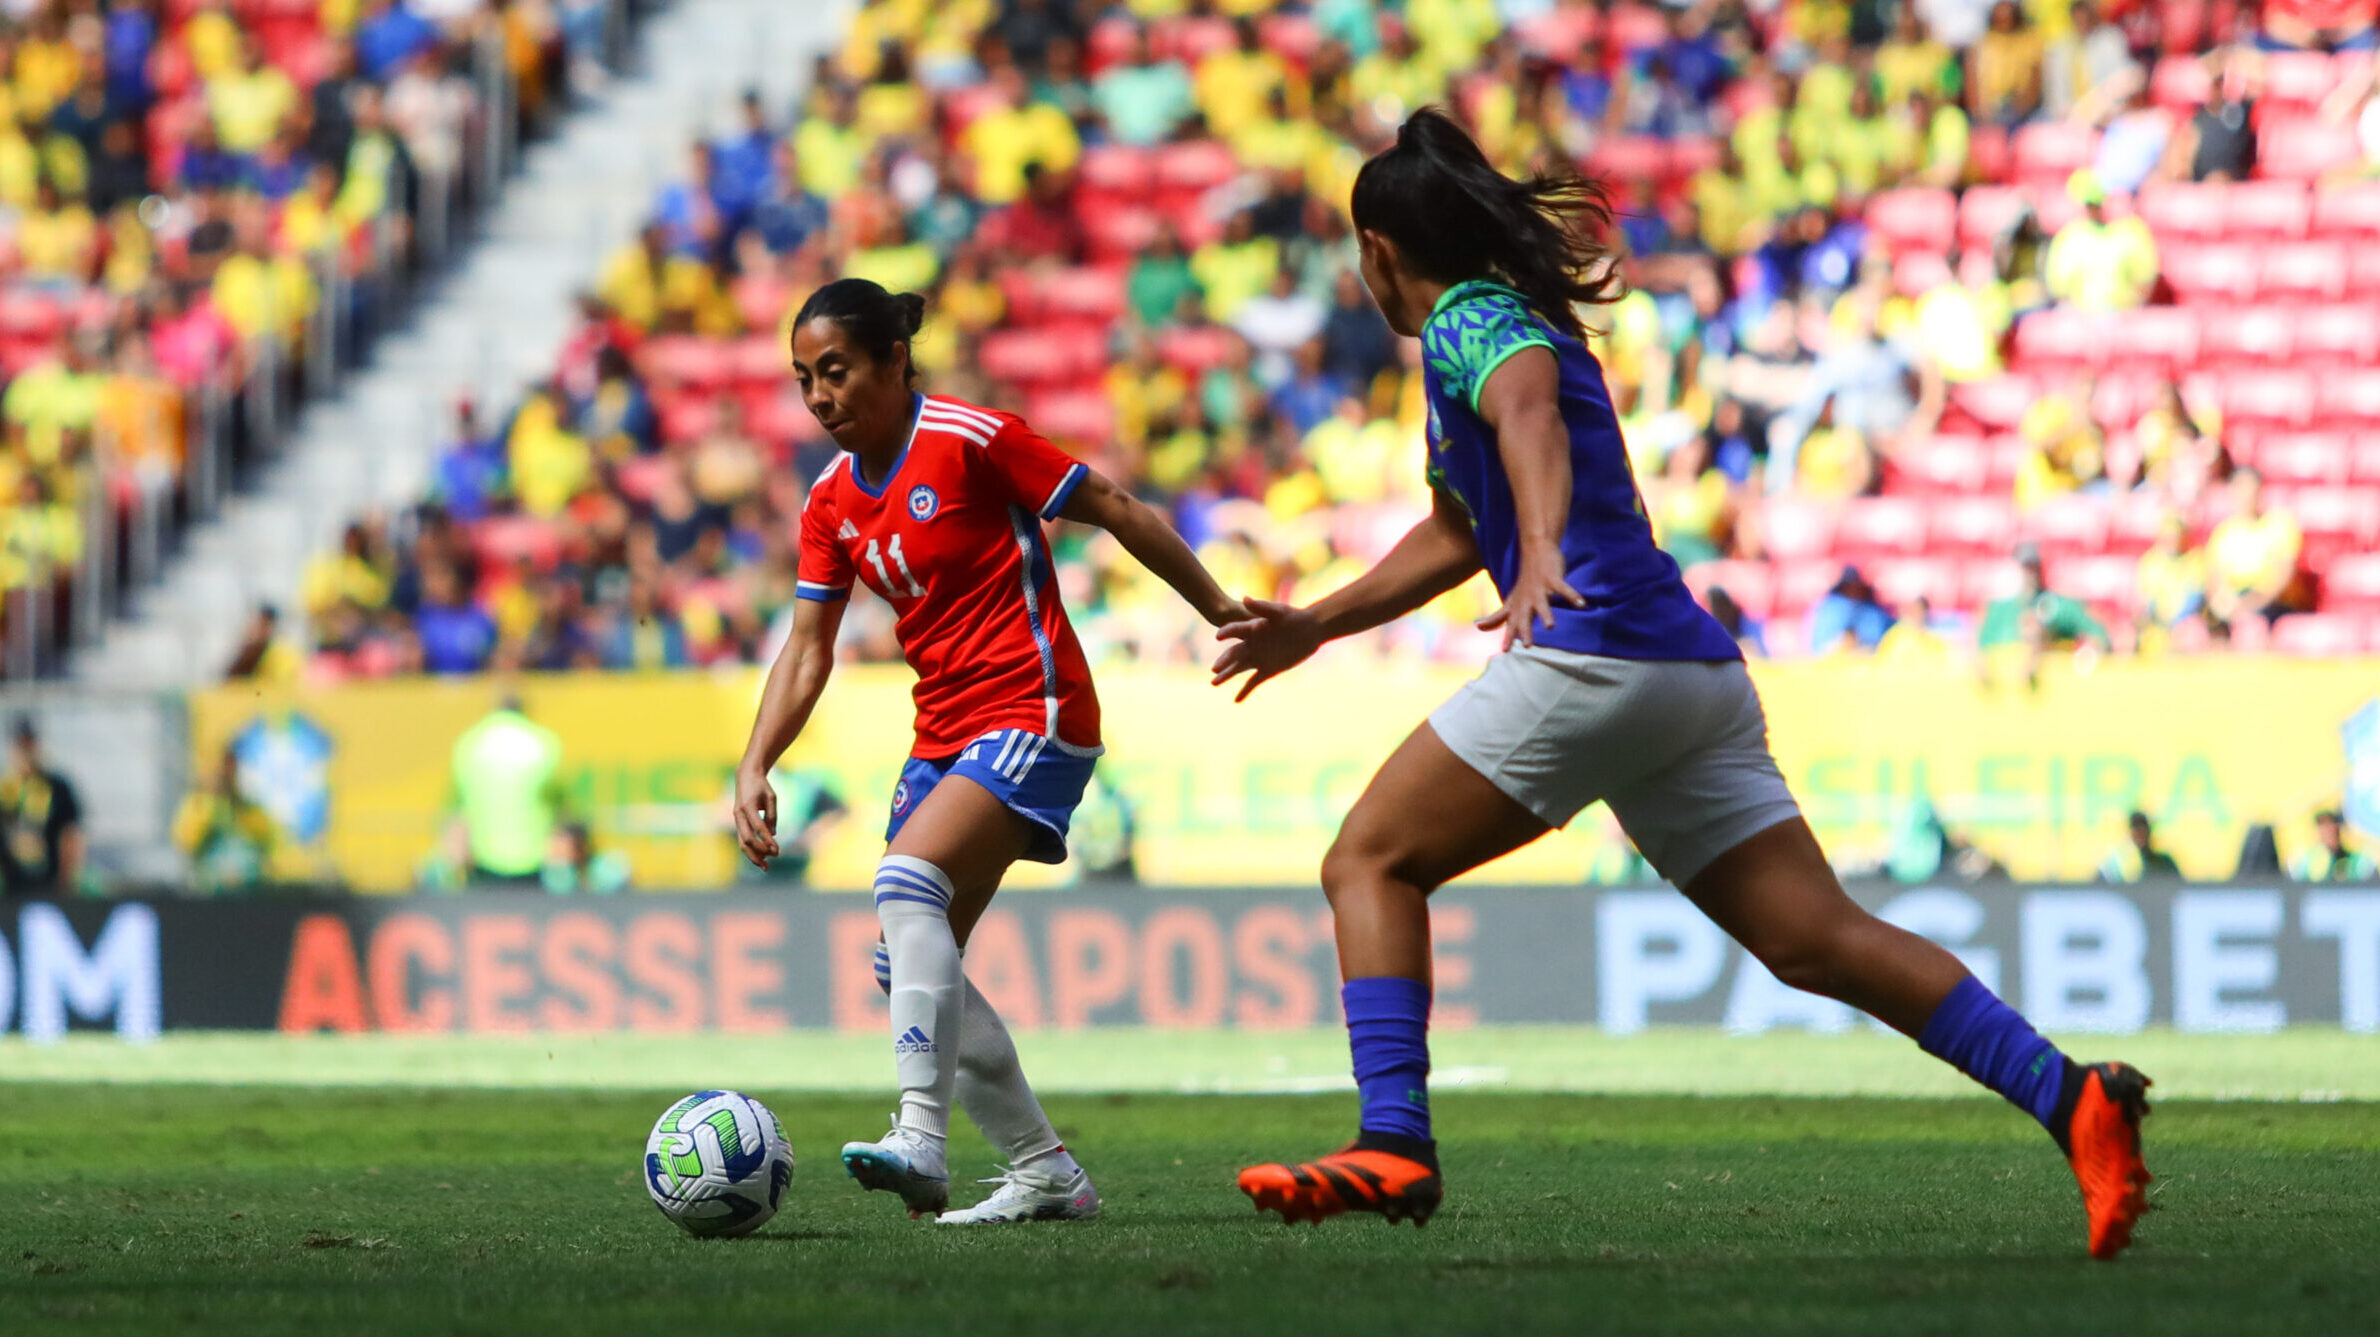 La Roja reschedules duels against New Zealand and confirms venues